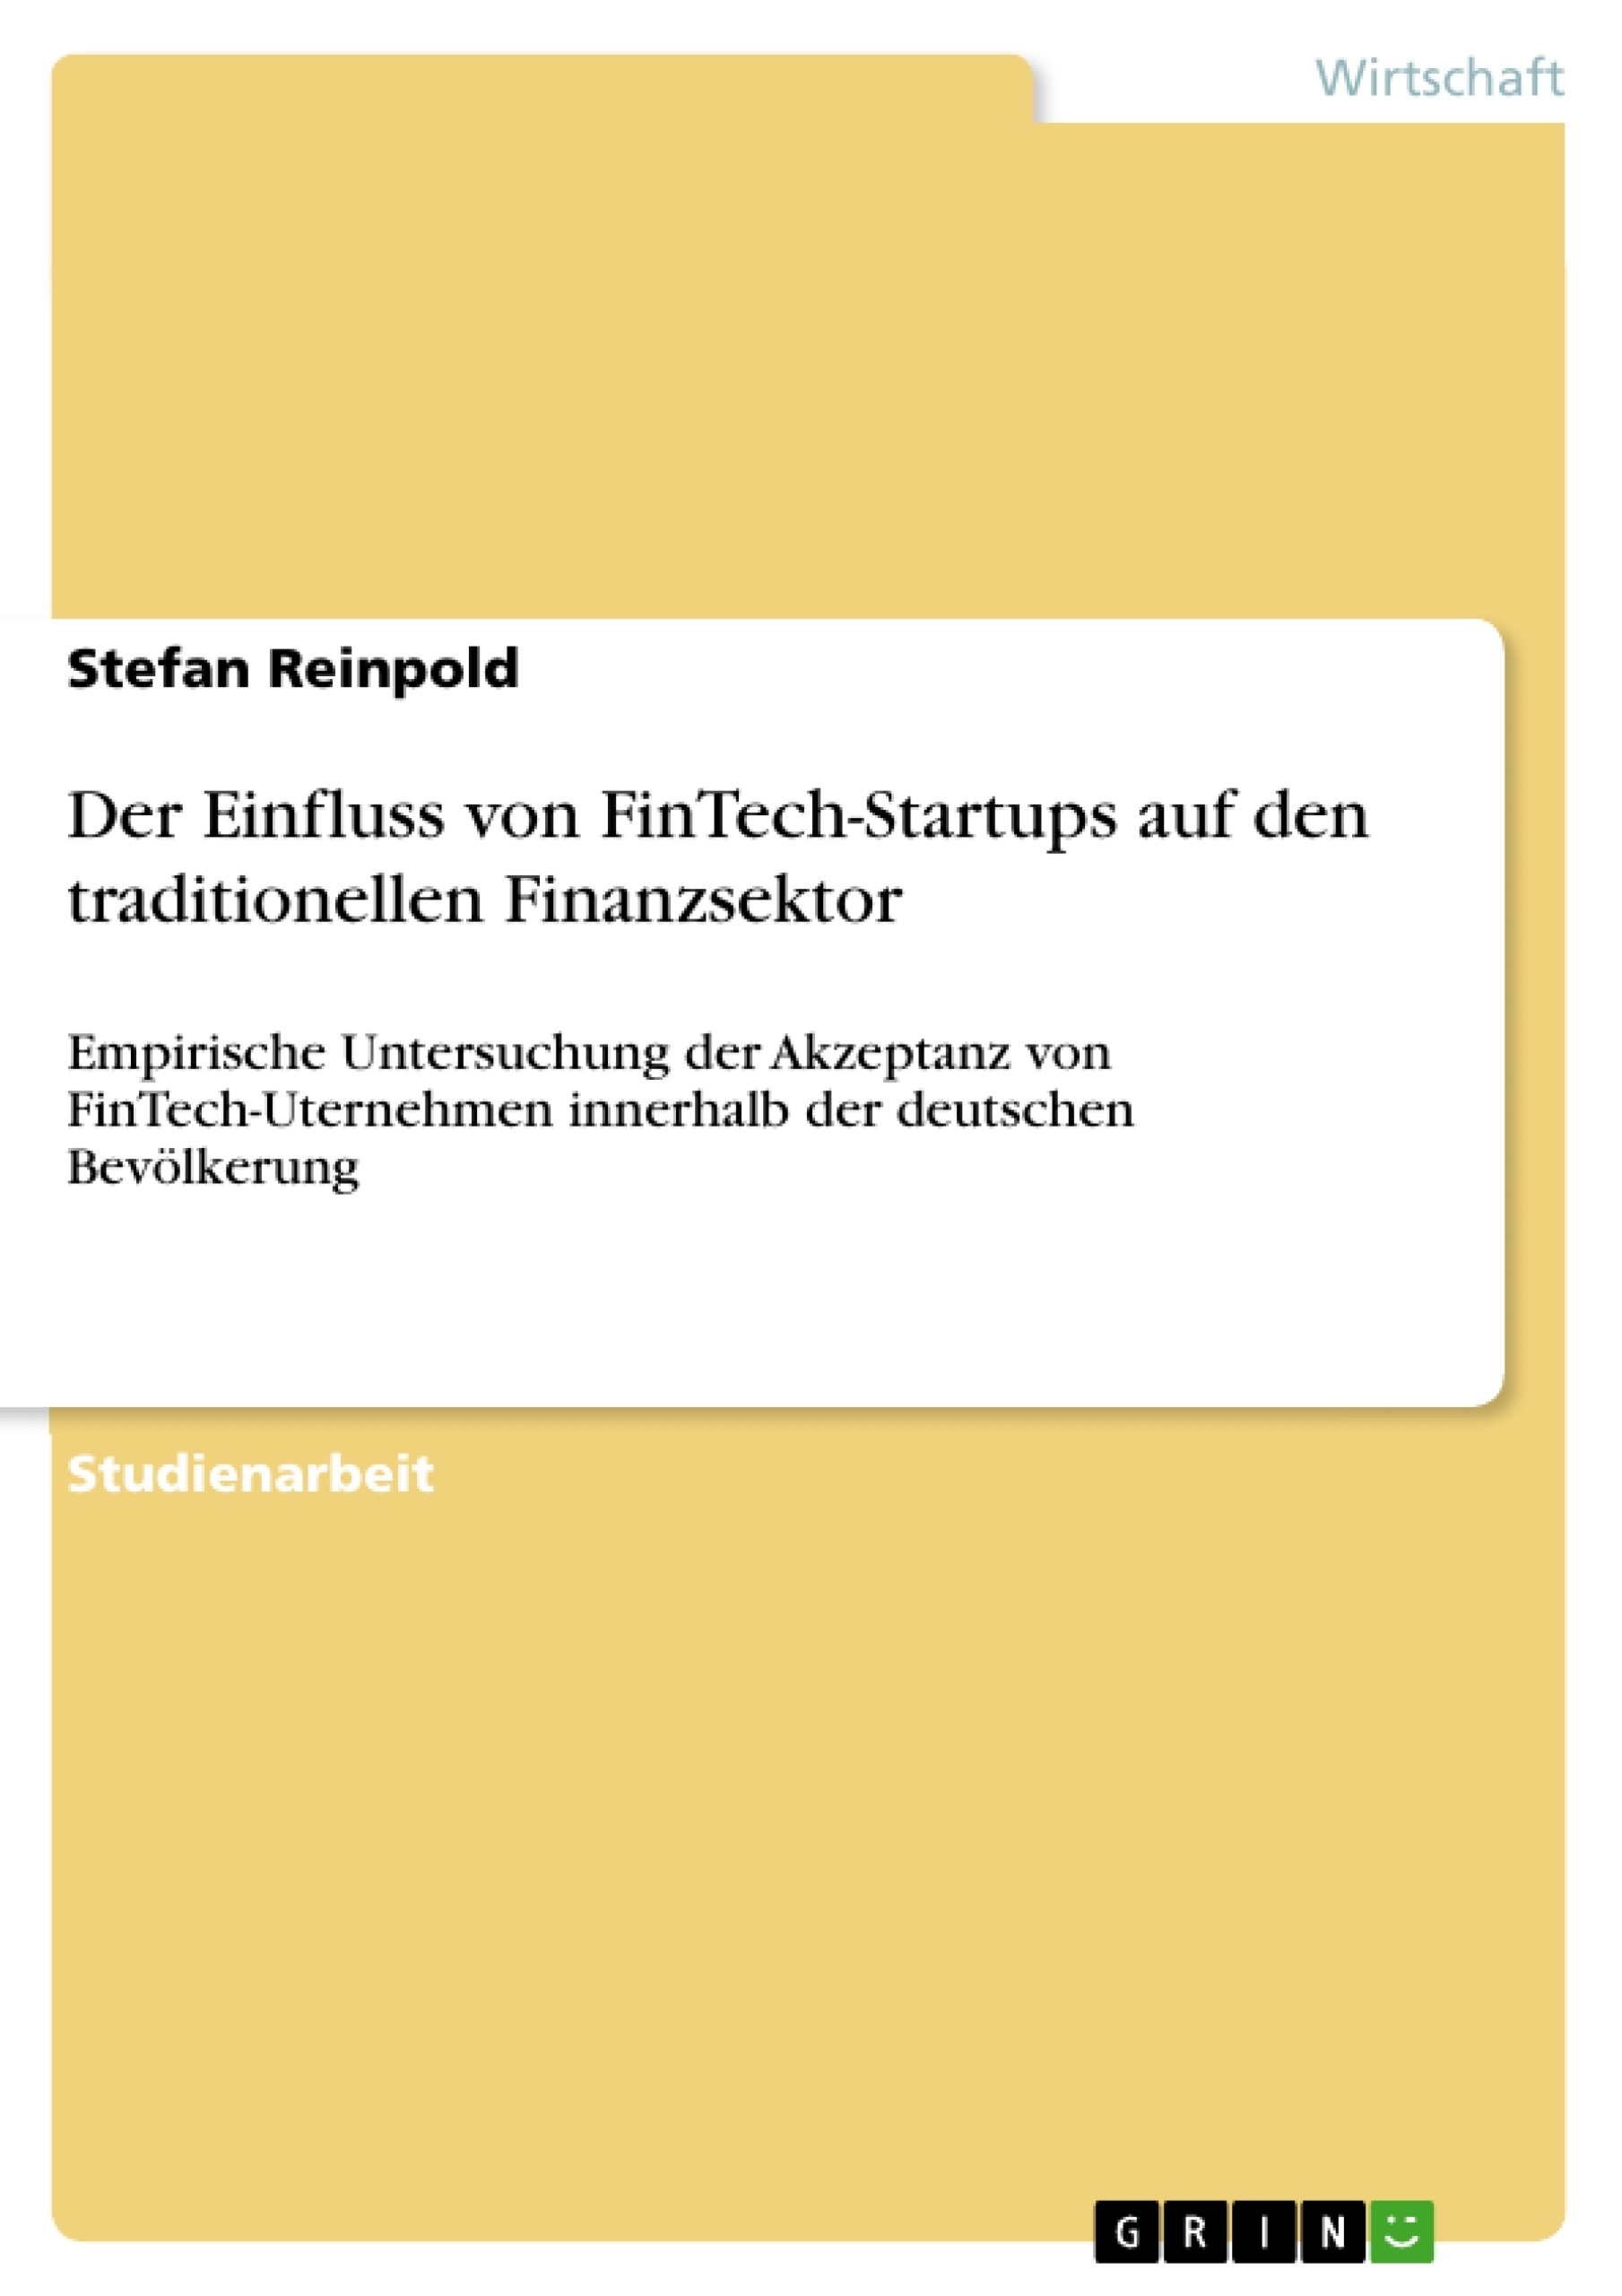 Título: Der Einfluss von FinTech-Startups auf den traditionellen Finanzsektor